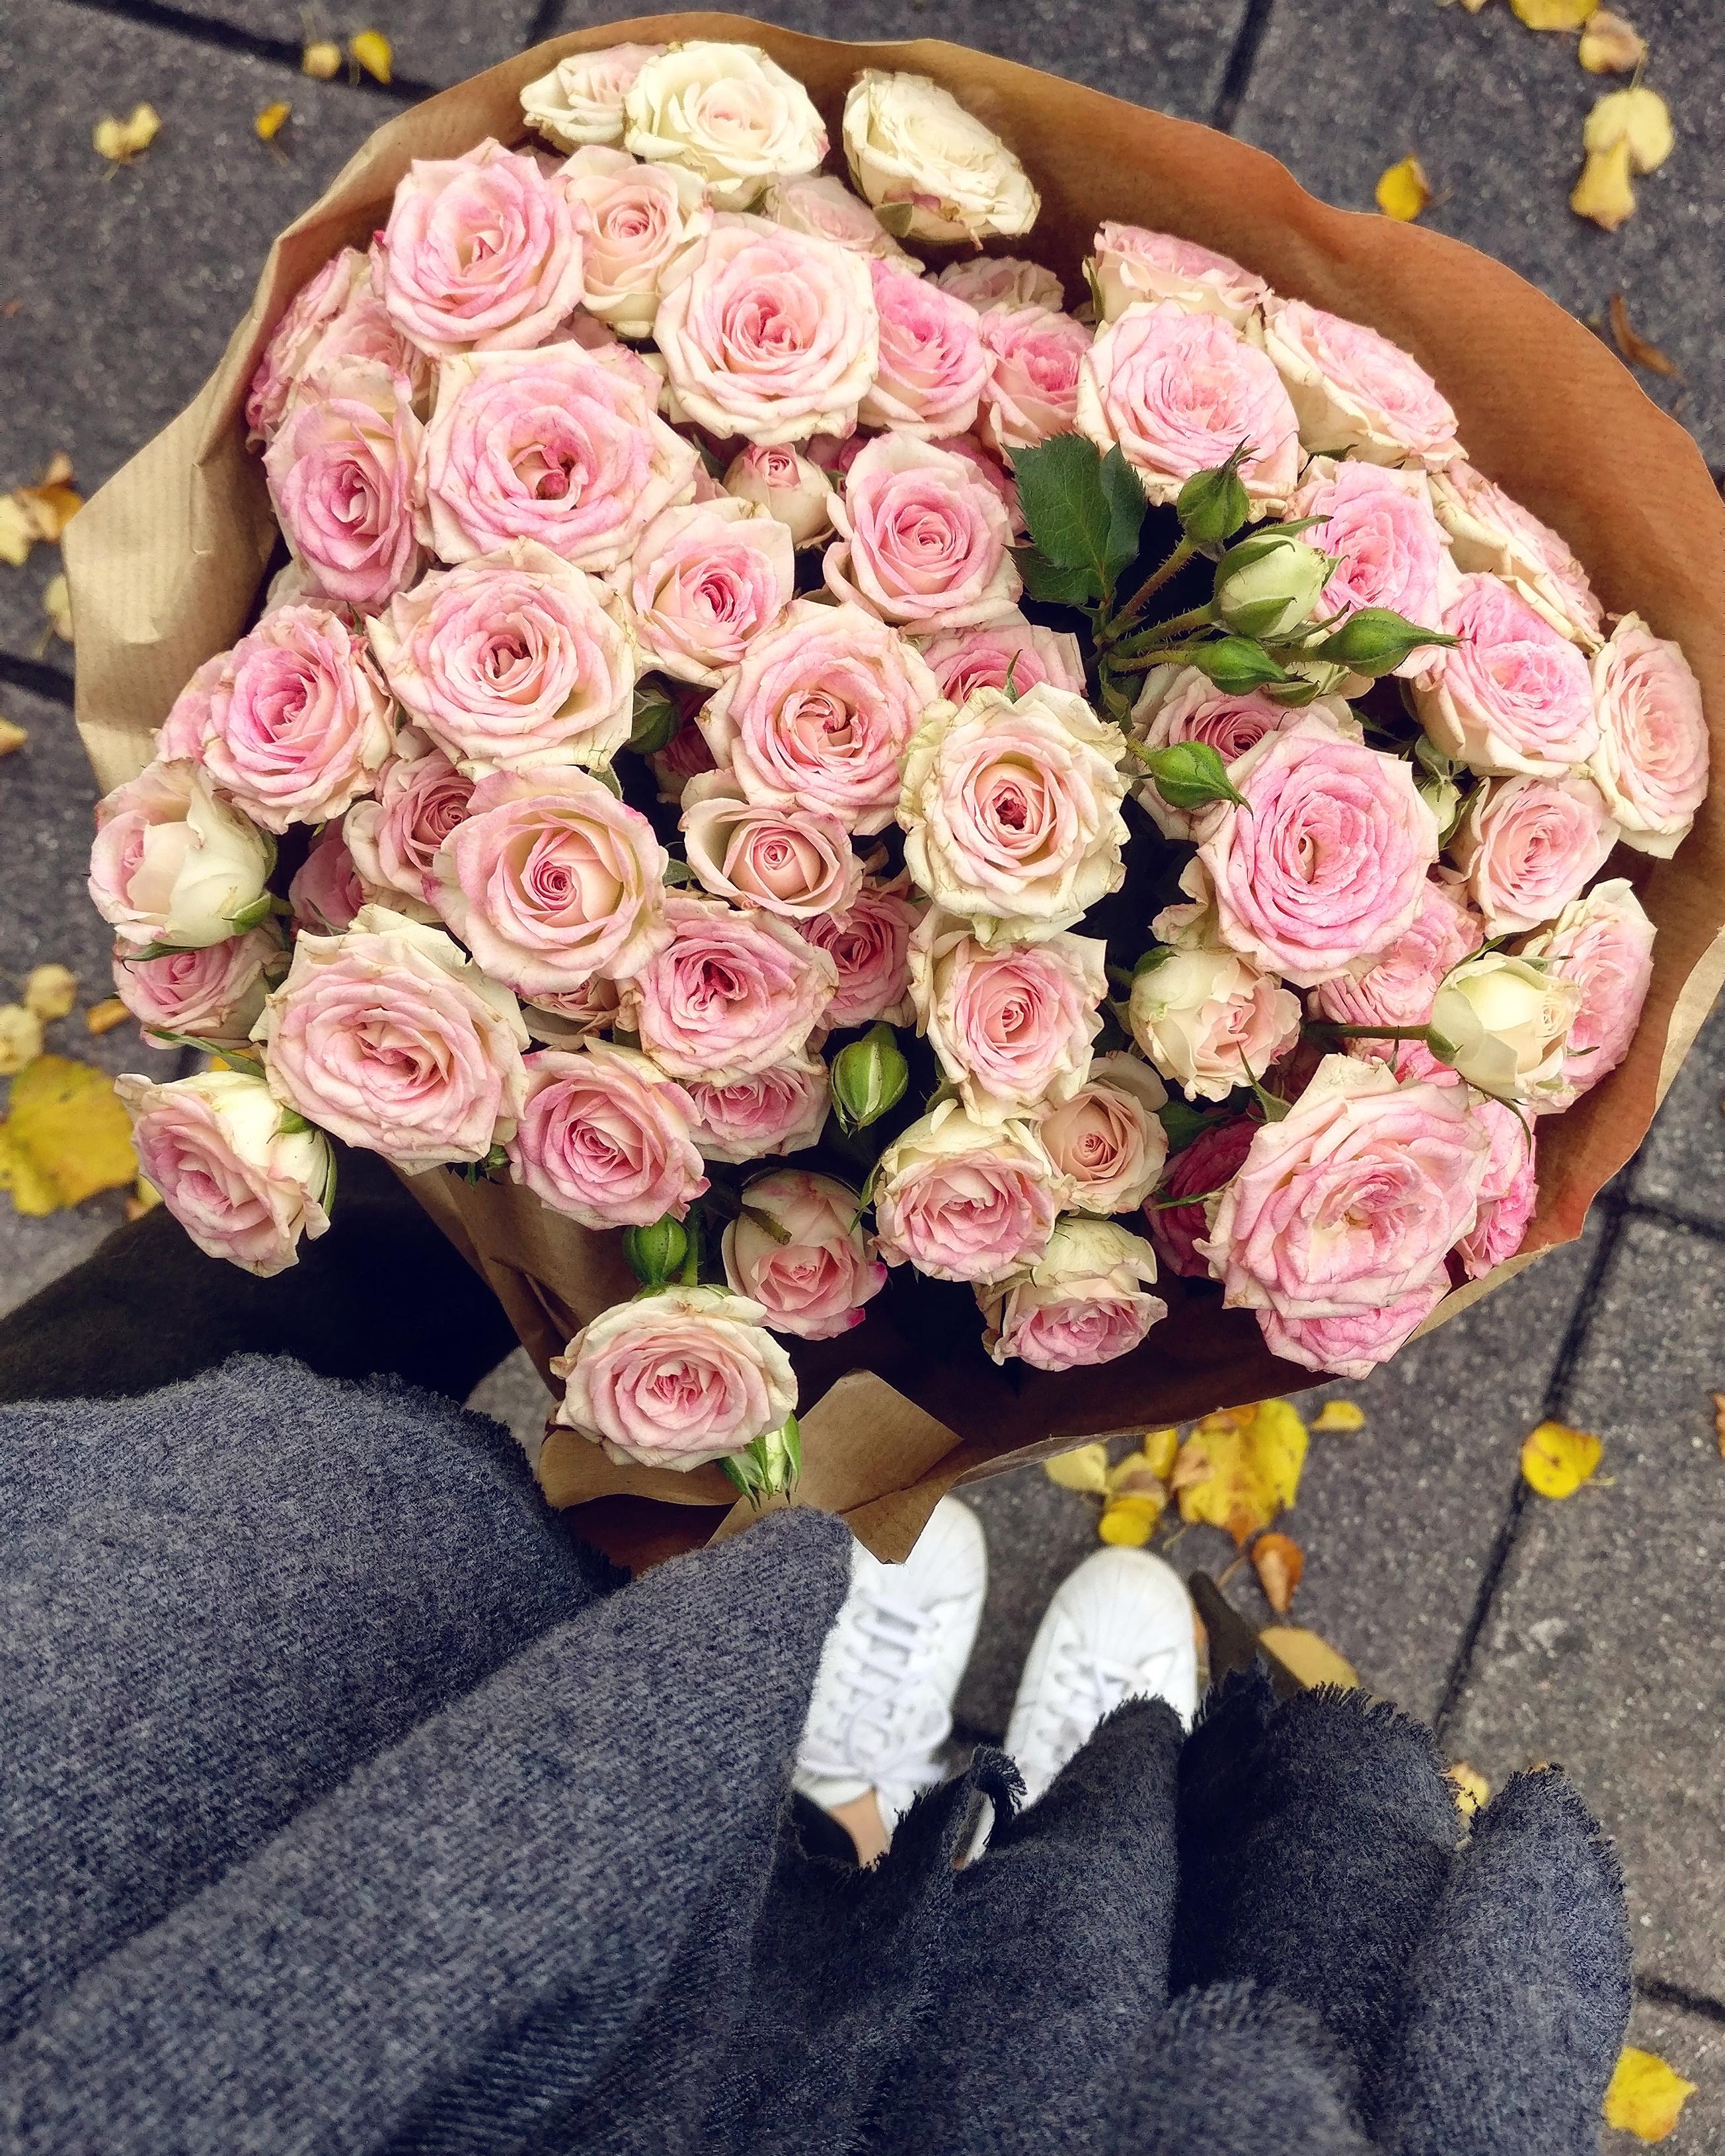 Blumen gehen immer!
#Blumen #flowers #pink